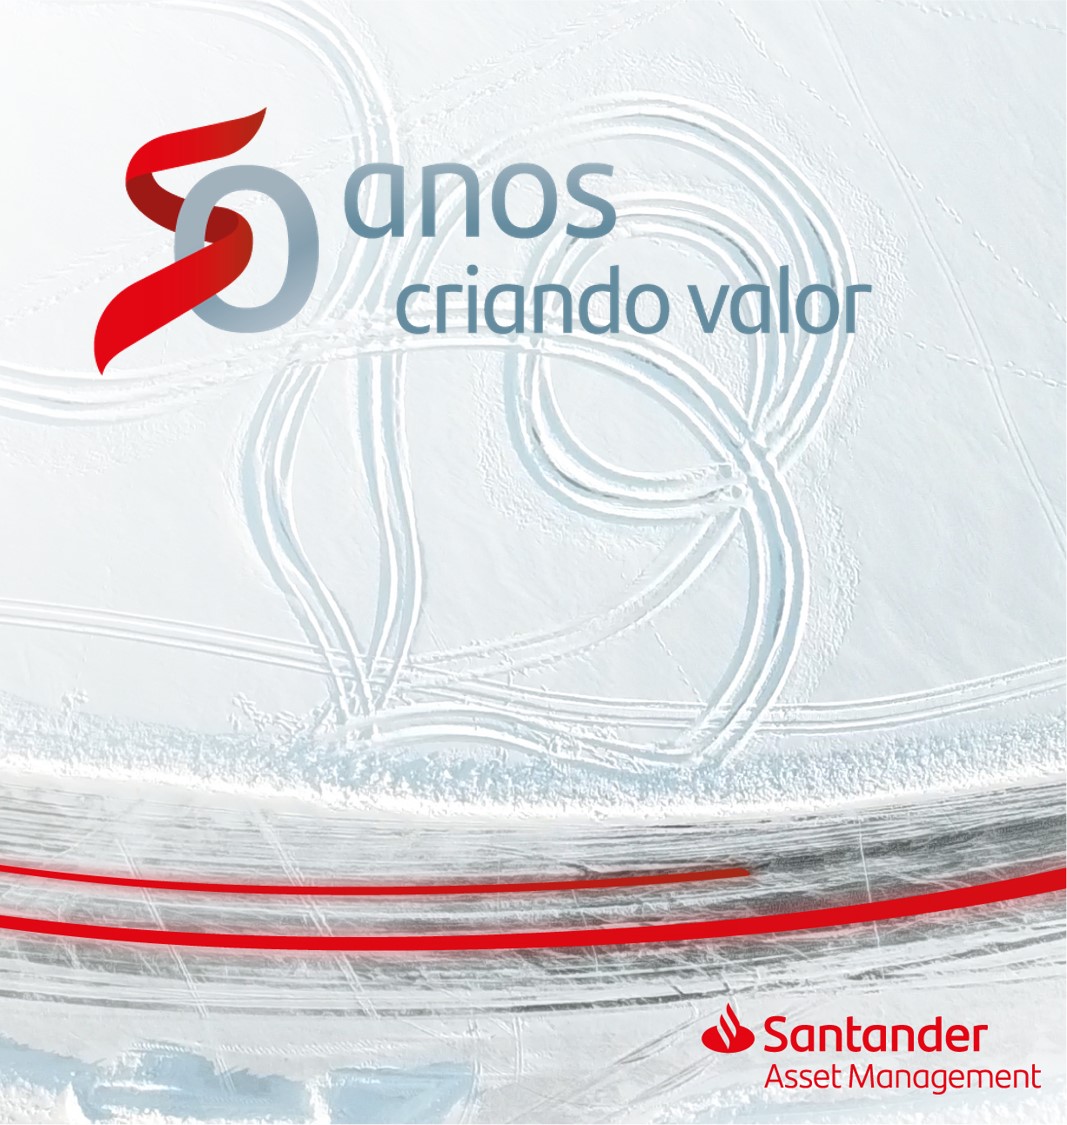 50 anos criando valor. Santander Asset Management.